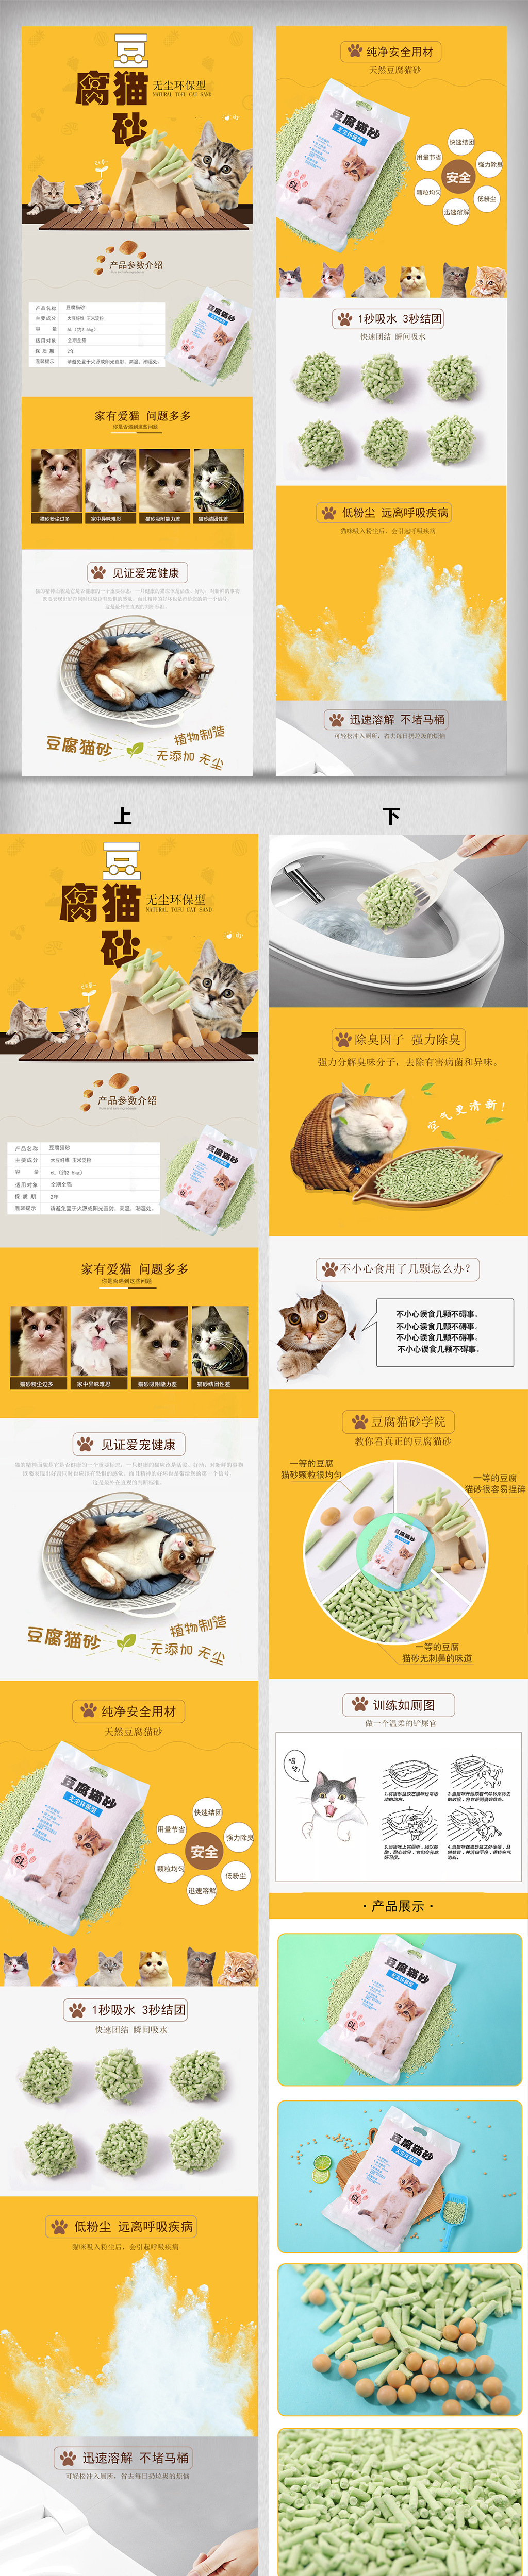 淘宝天猫豆腐猫砂宠物用品详情页图片